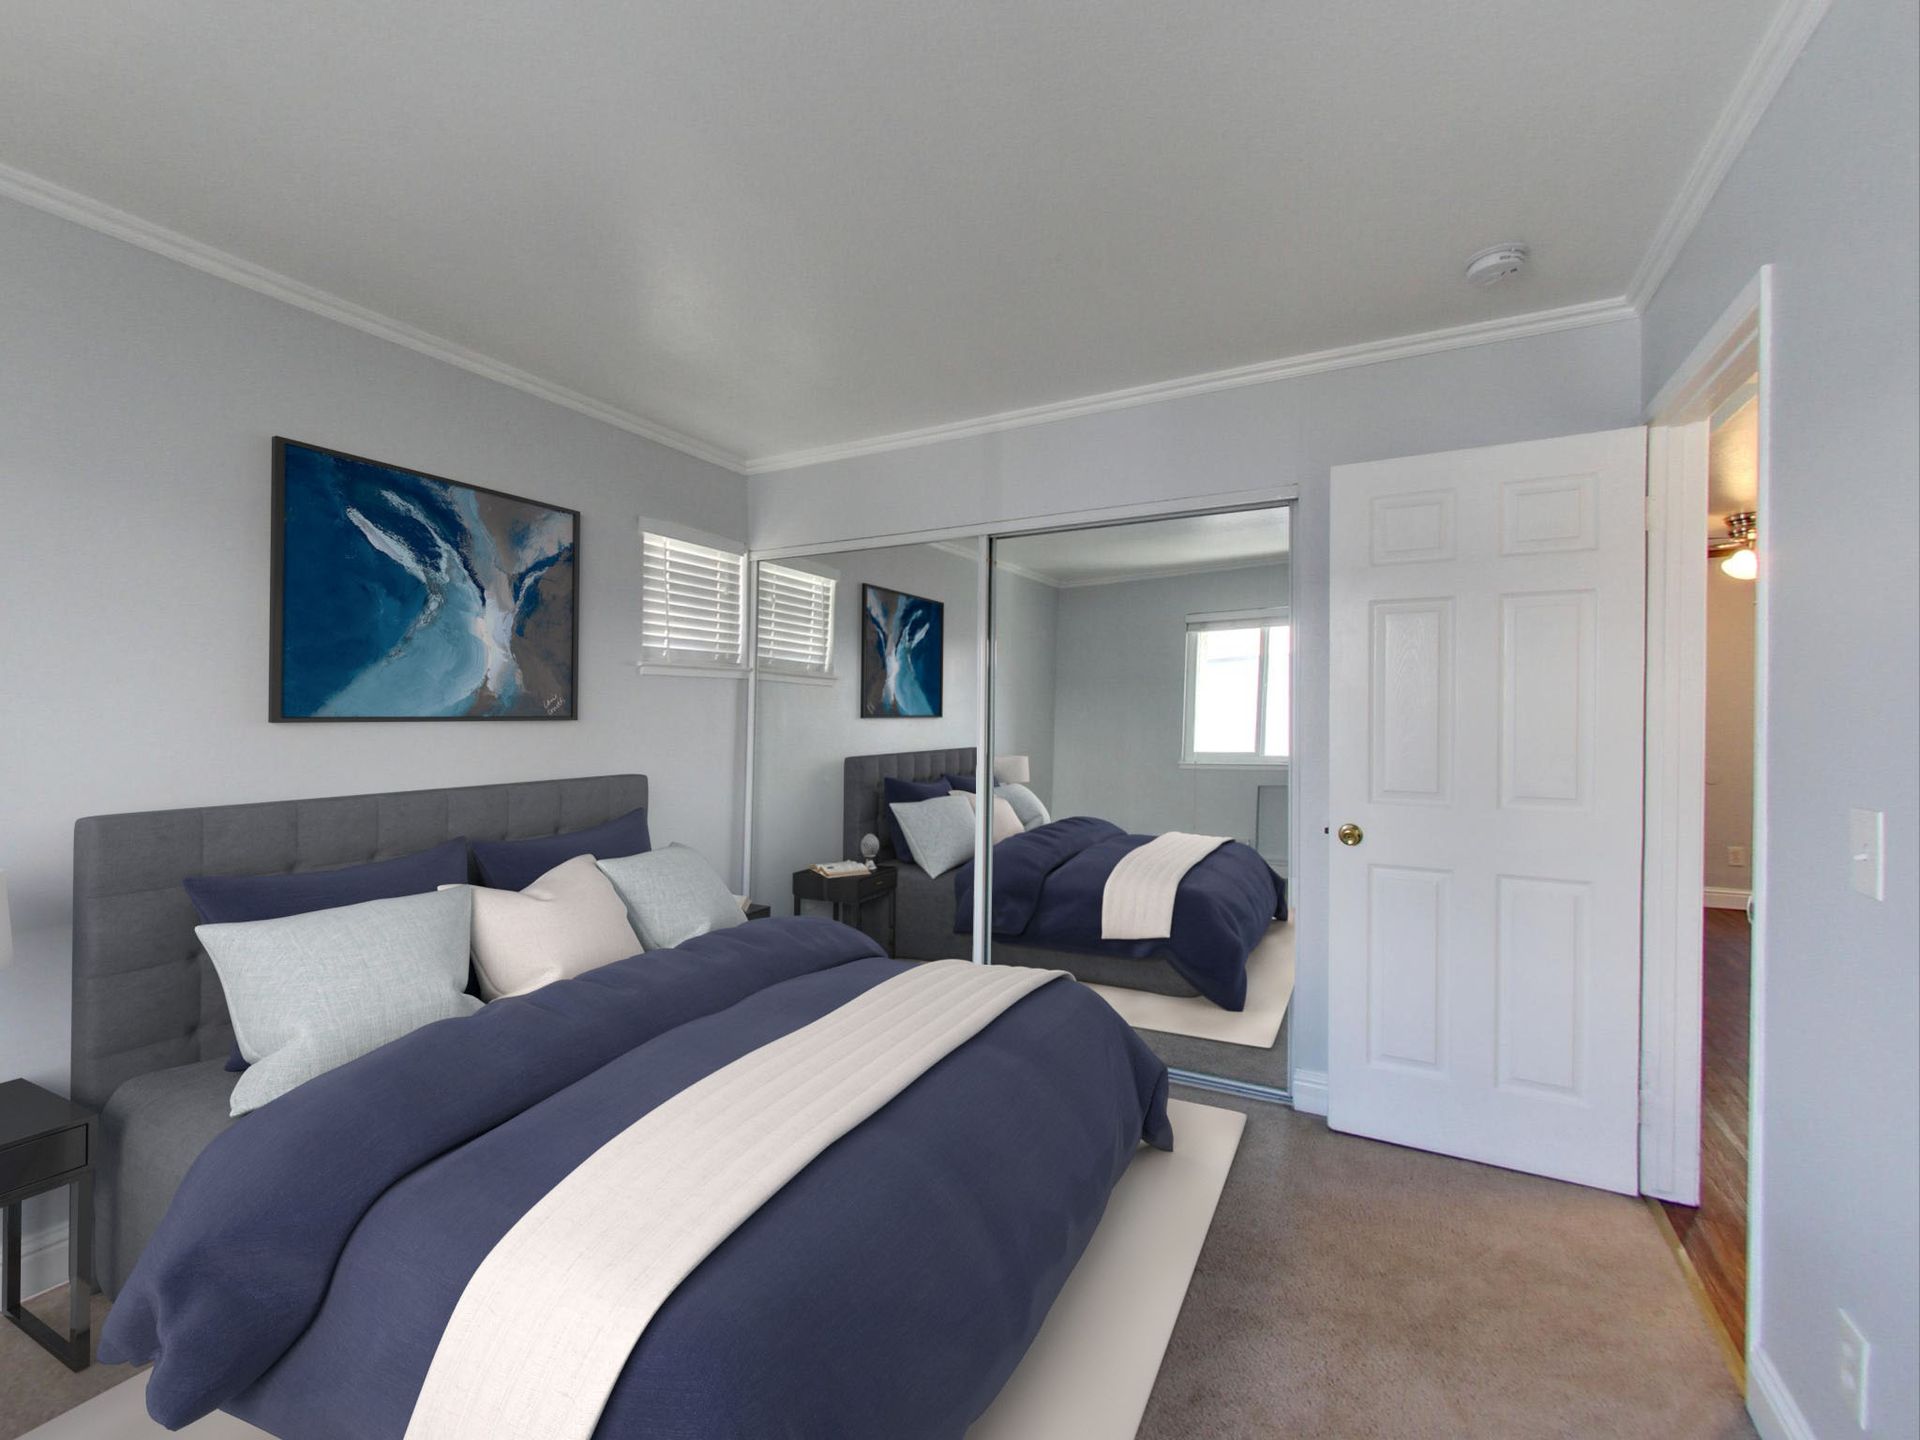 Hampshire apartments bedroom